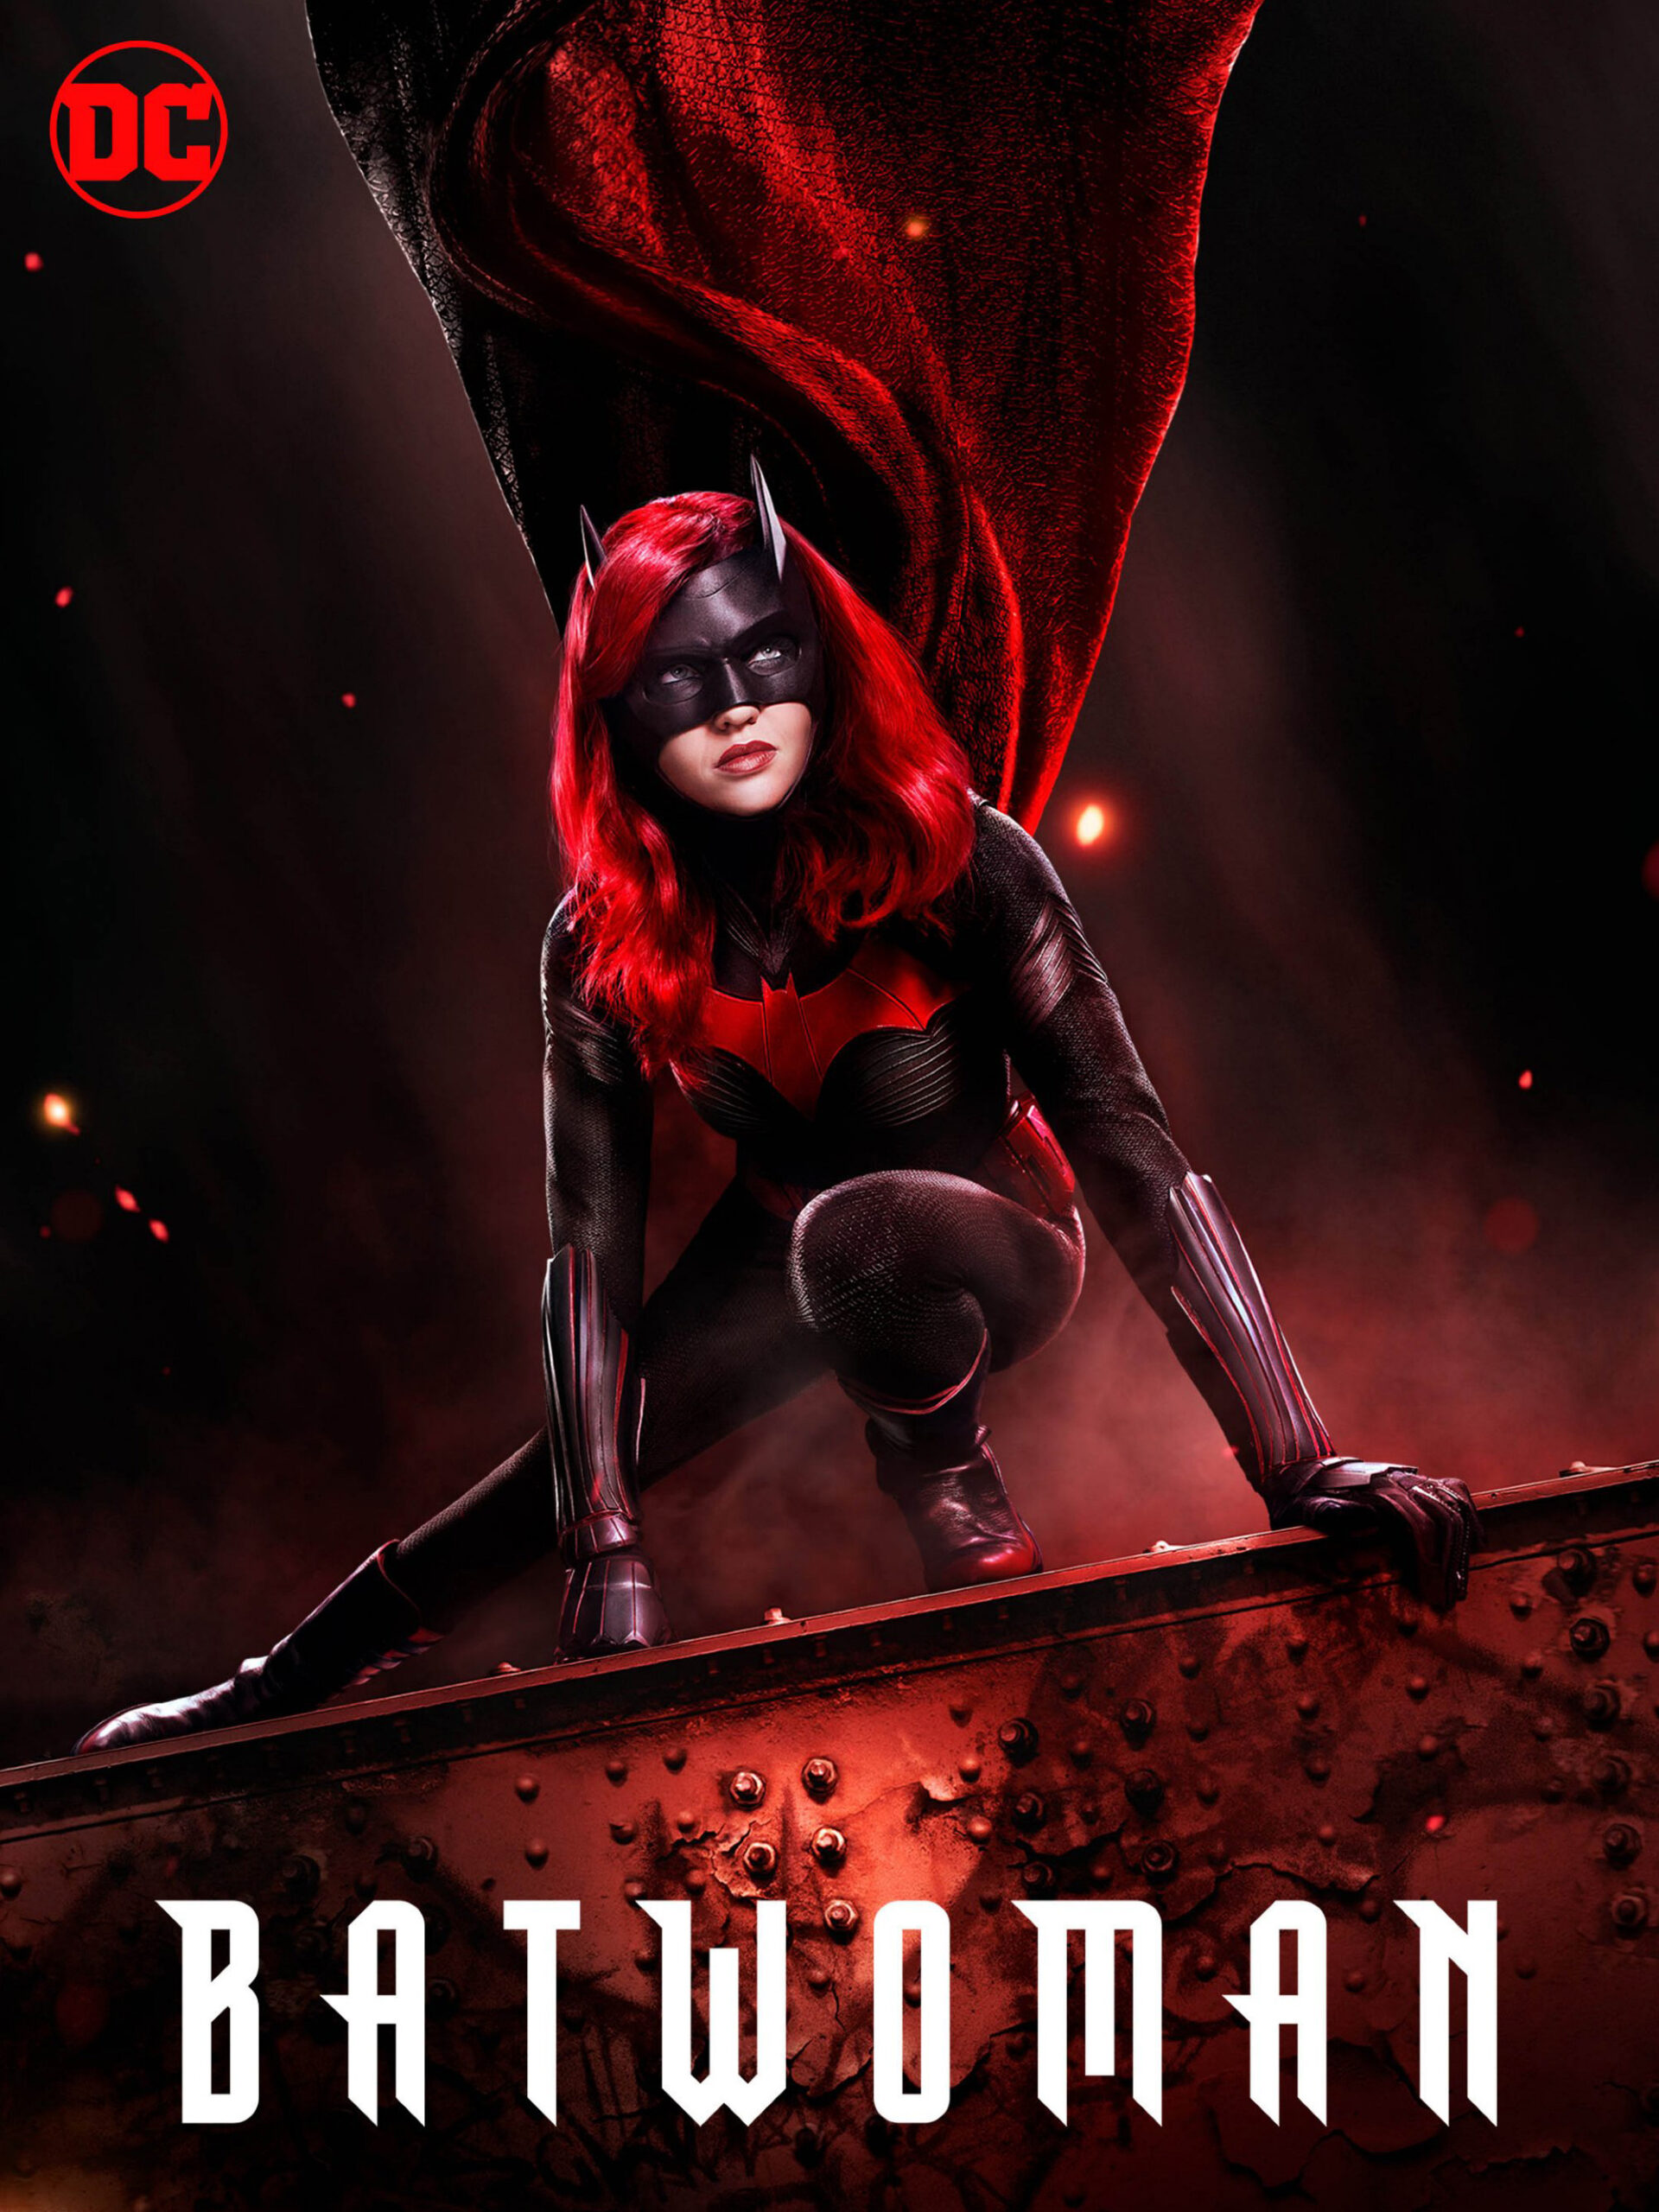 ดูหนังออนไลน์ Batwoman Season 1 (2019) EP.7 แบทวูแมน ซีซั่น 1 ตอนที่ 7 (Soundtrack)